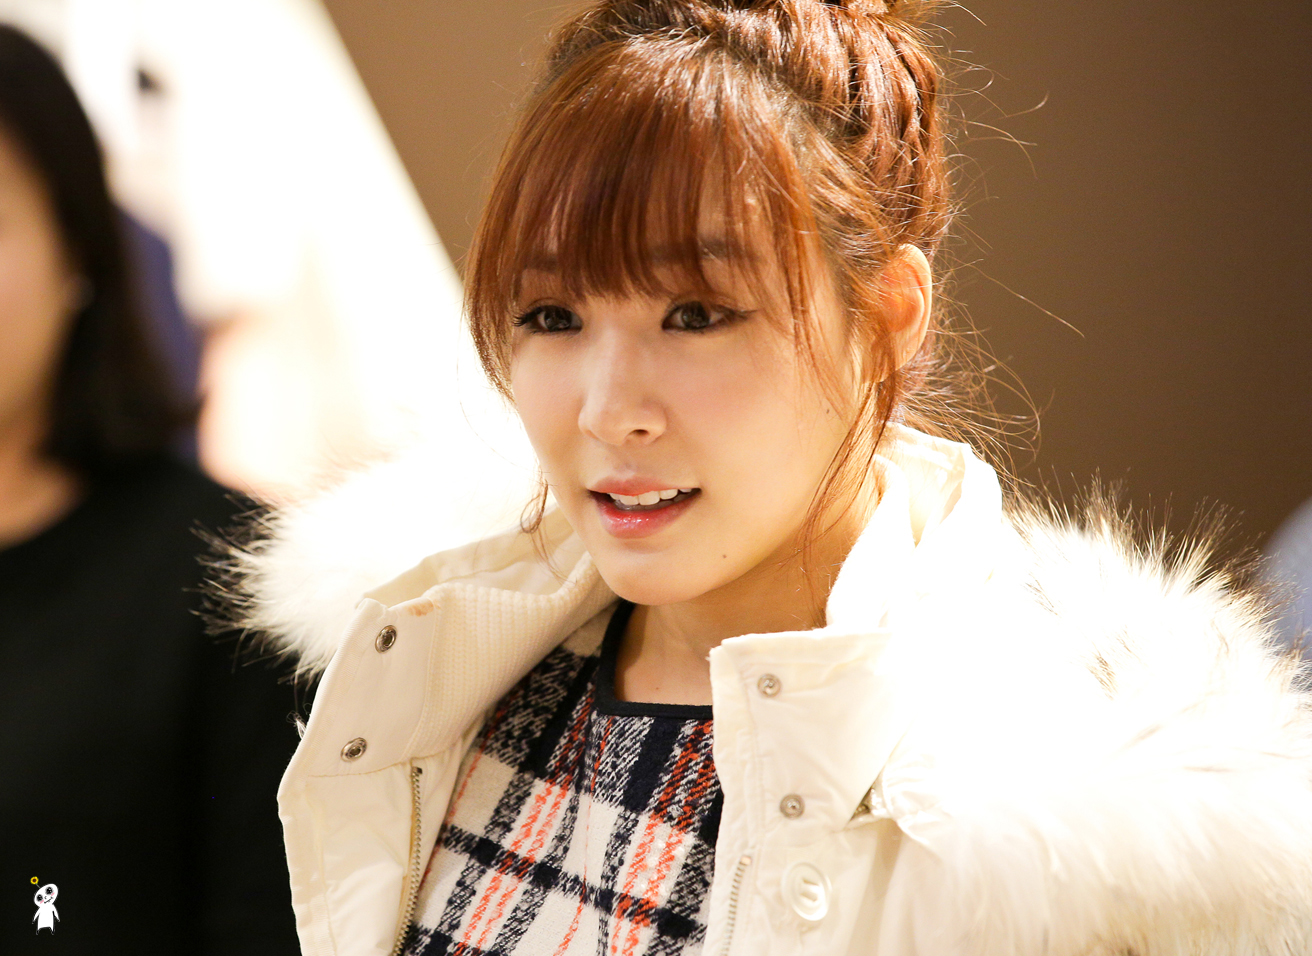 [PIC][28-11-2013]Tiffany ghé thăm cửa hàng "QUA" ở Hyundai Department Store vào trưa nay - Page 2 2458324552980C82026801